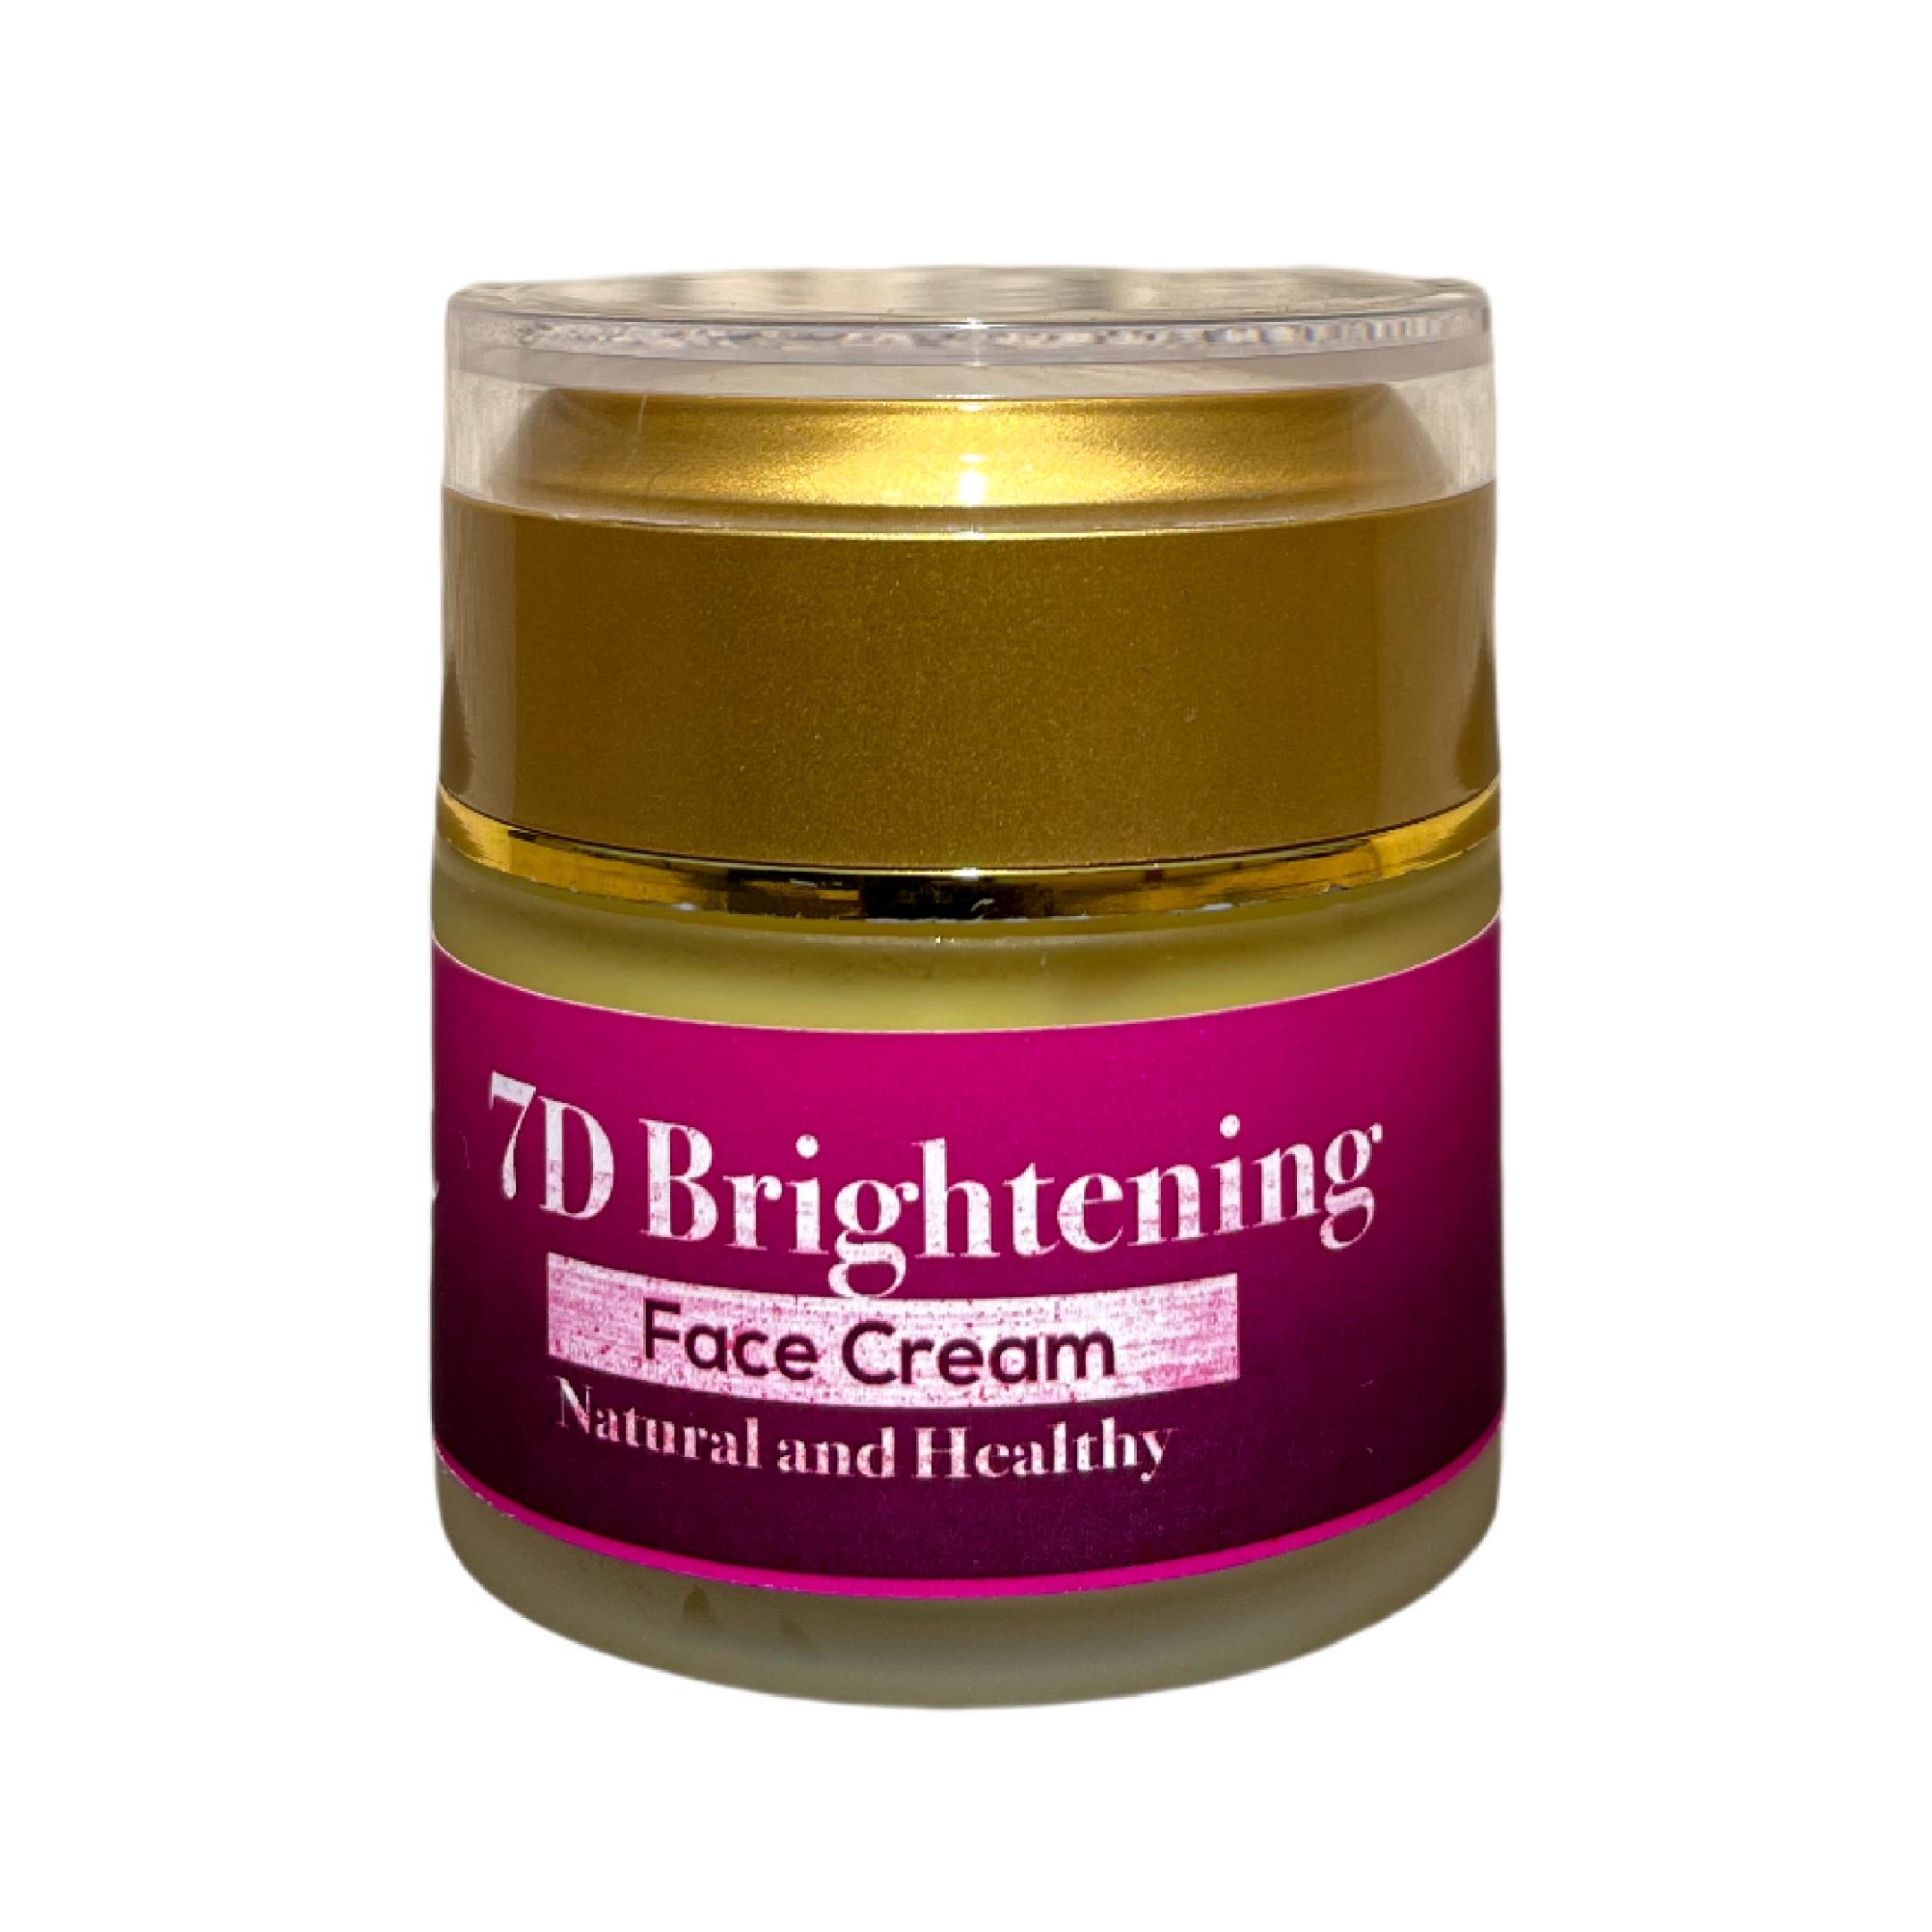 7D Brightening Face Cream